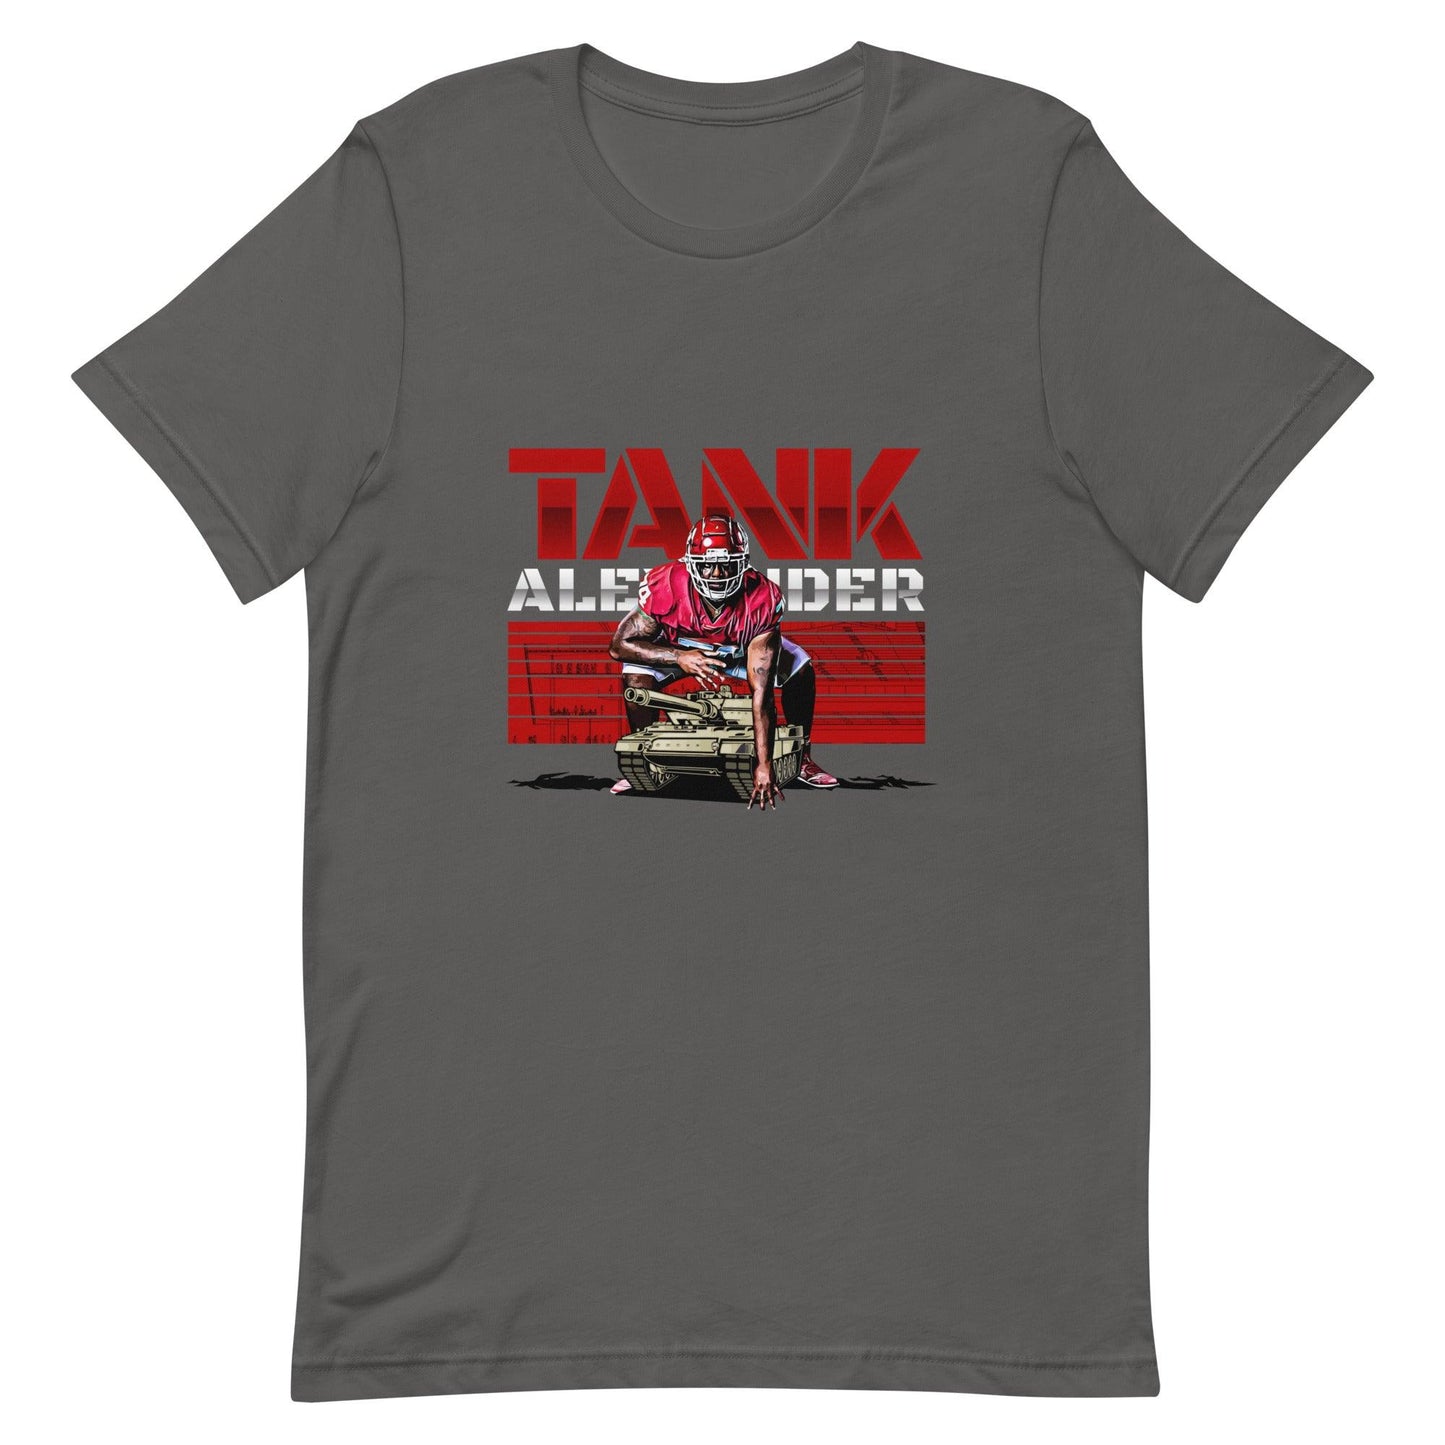 Marcus Alexander "Tank" t-shirt - Fan Arch